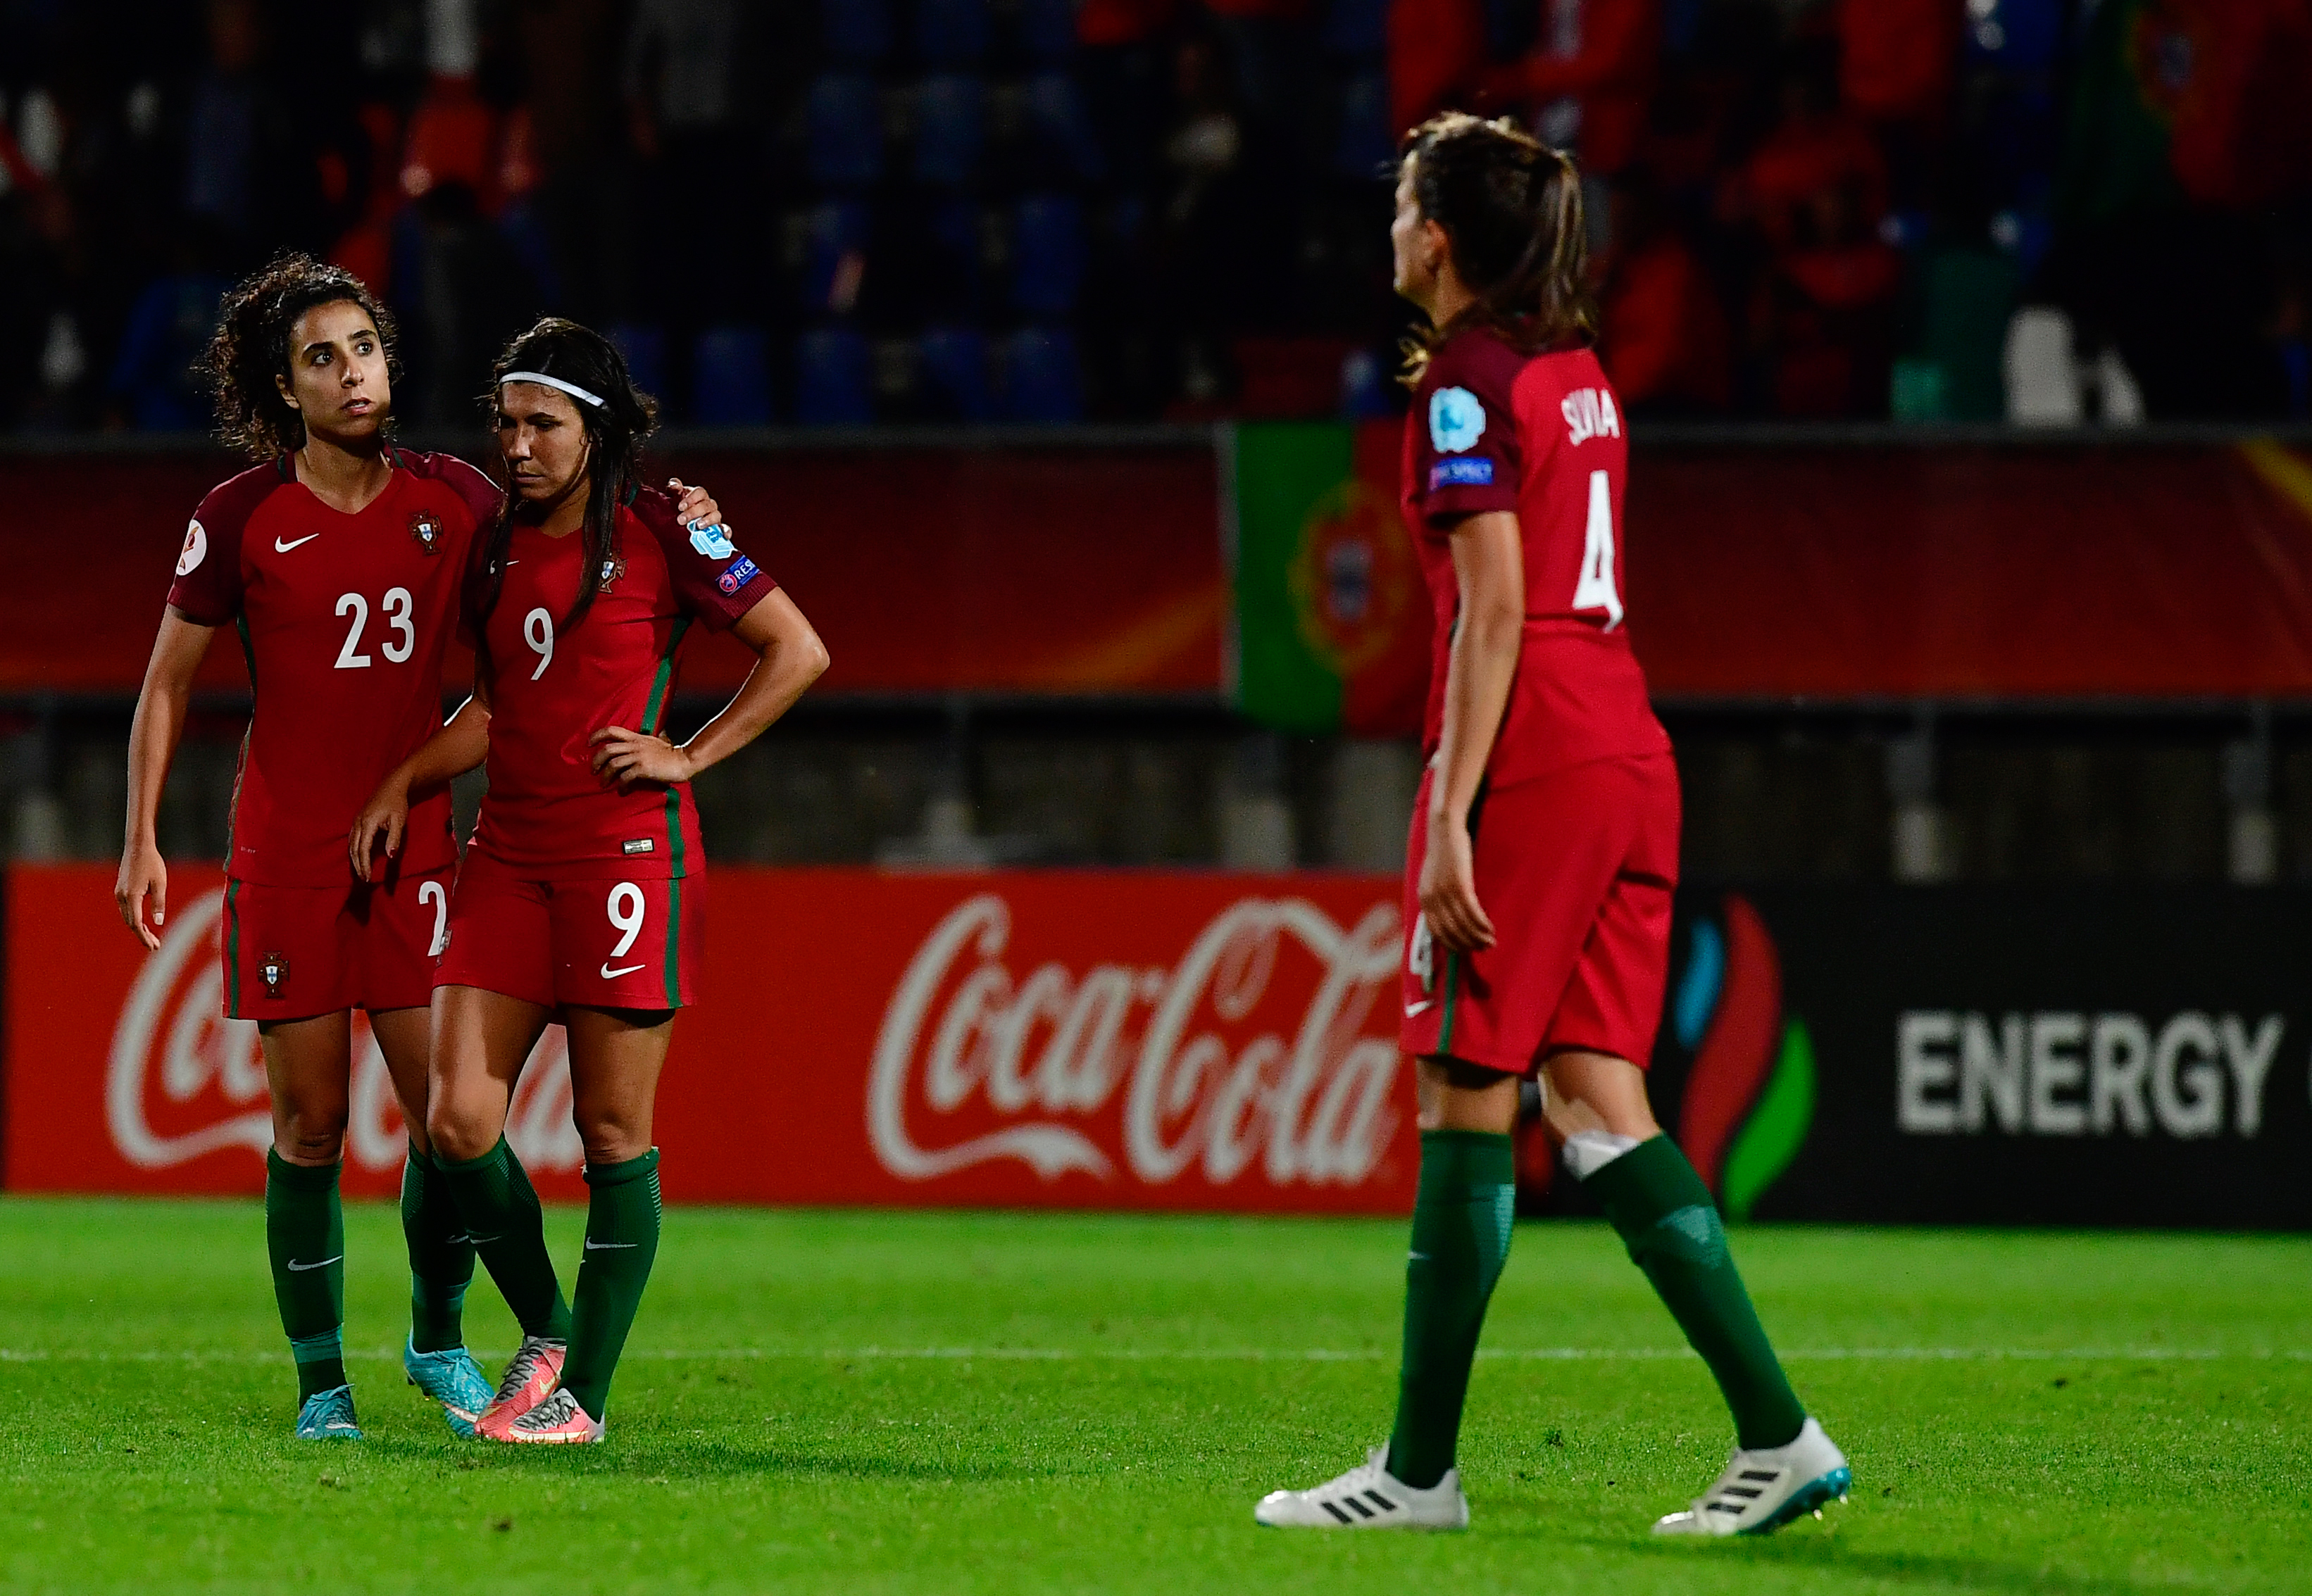 Seleção de futebol feminino joga dois 'particulares' nos Açores com  República da Irlanda - Seleção Nacional Feminino - SAPO Desporto